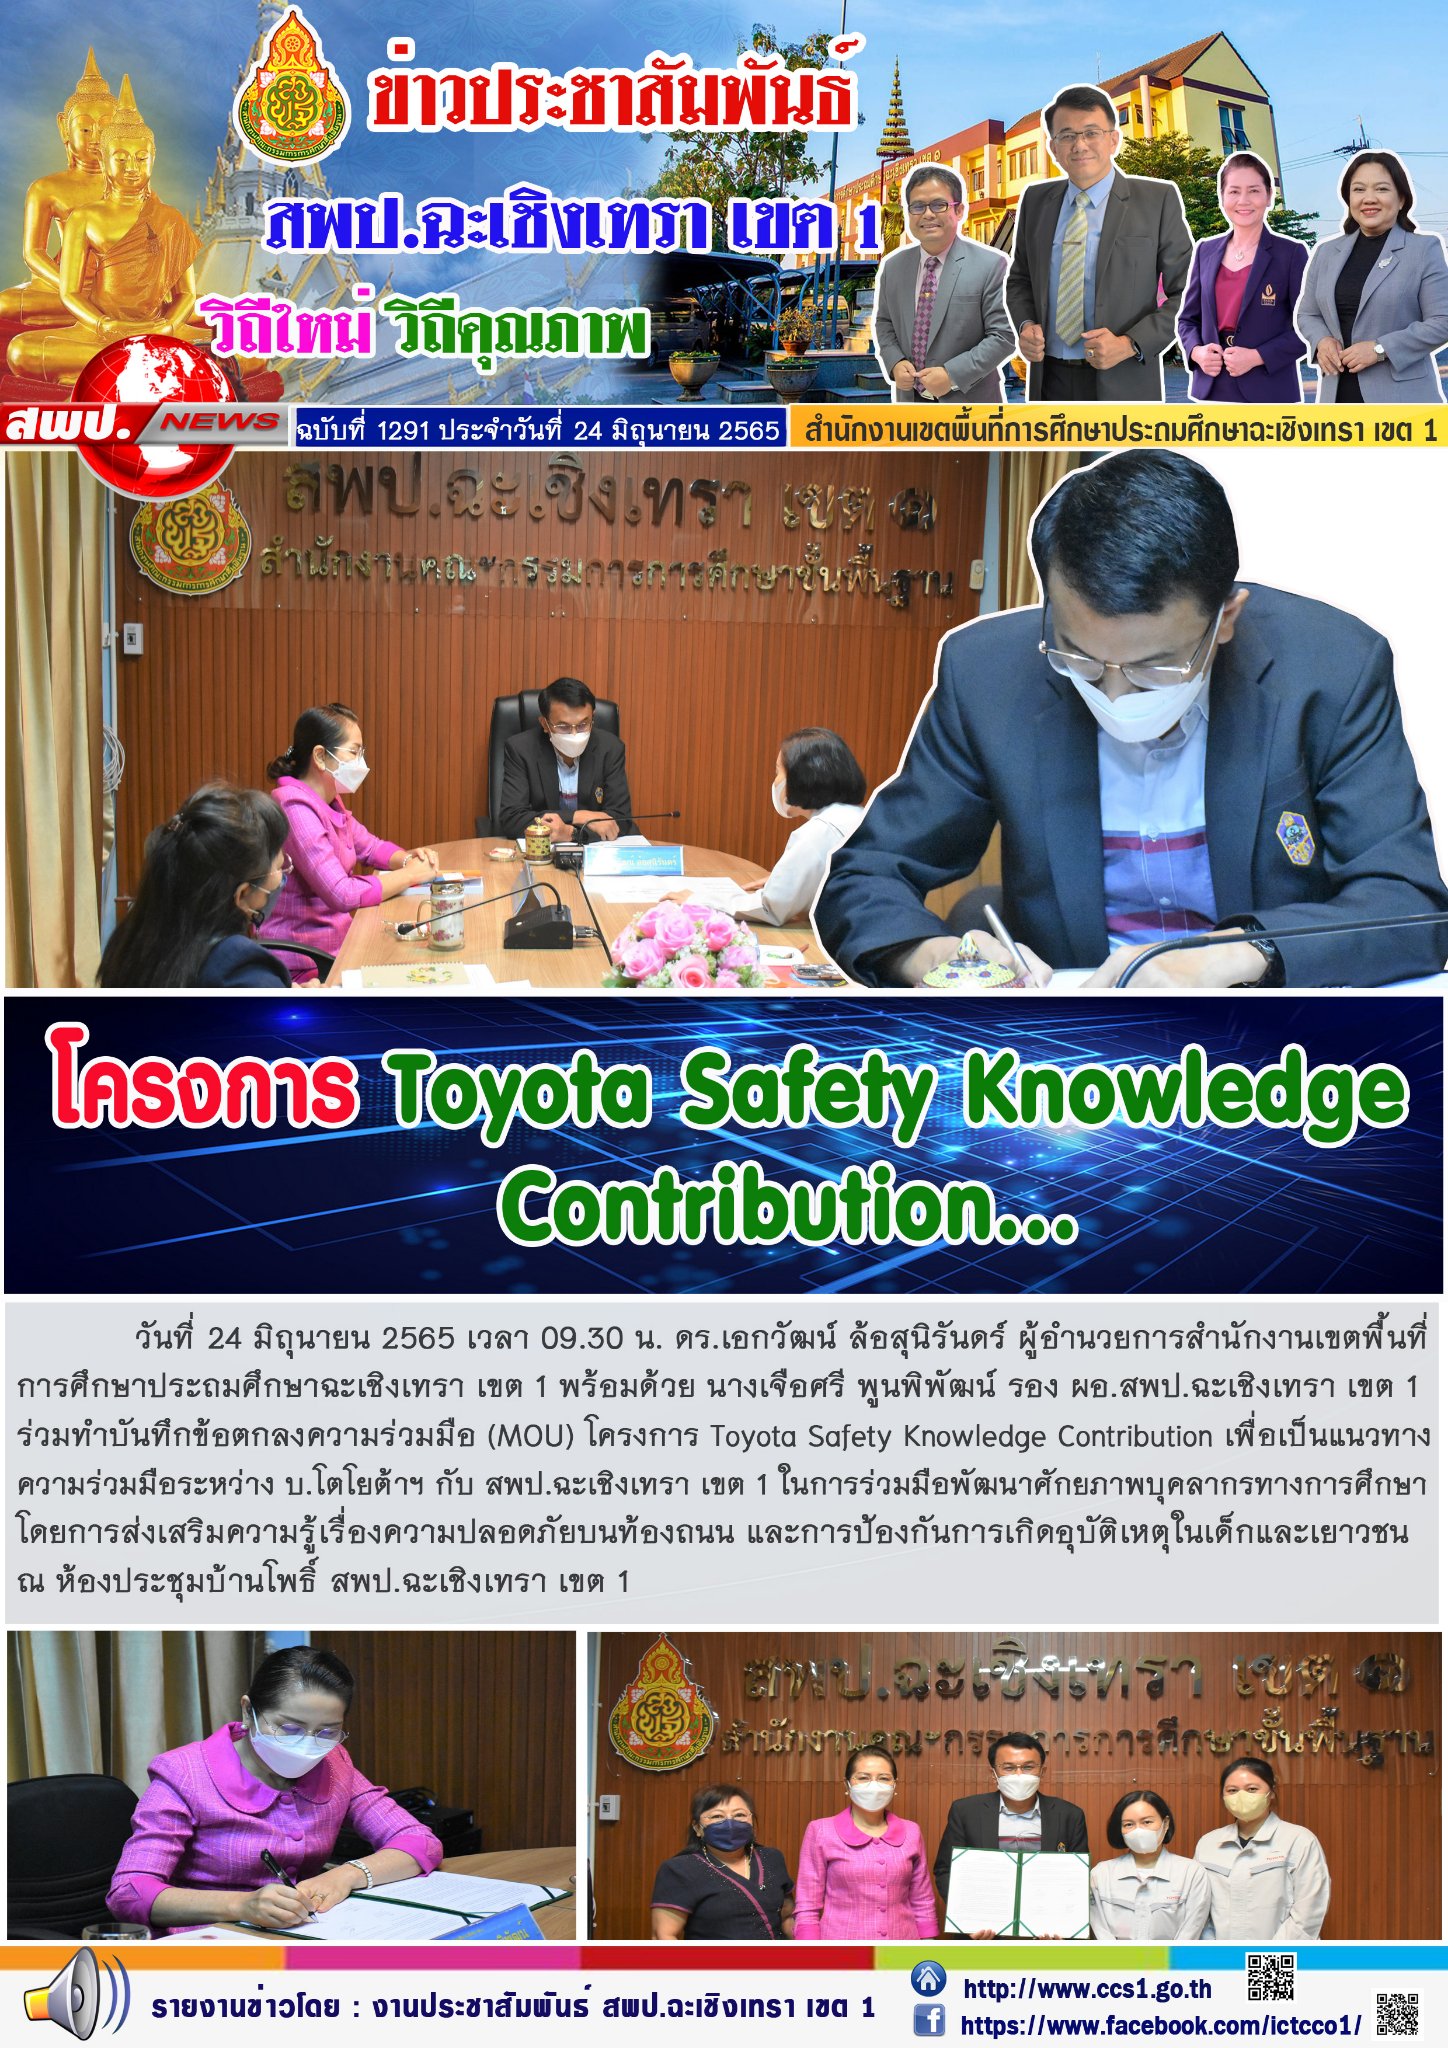 ร่วมทำบันทึกข้อตกลงความร่วมมือ (MOU) โครงการ Toyota Safety Knowledge Contribution เพื่อเป็นแนวทางความร่วมมือระหว่าง บ.โตโยต้าฯ กับสพป.ฉะเชิงเทรา เขต 1